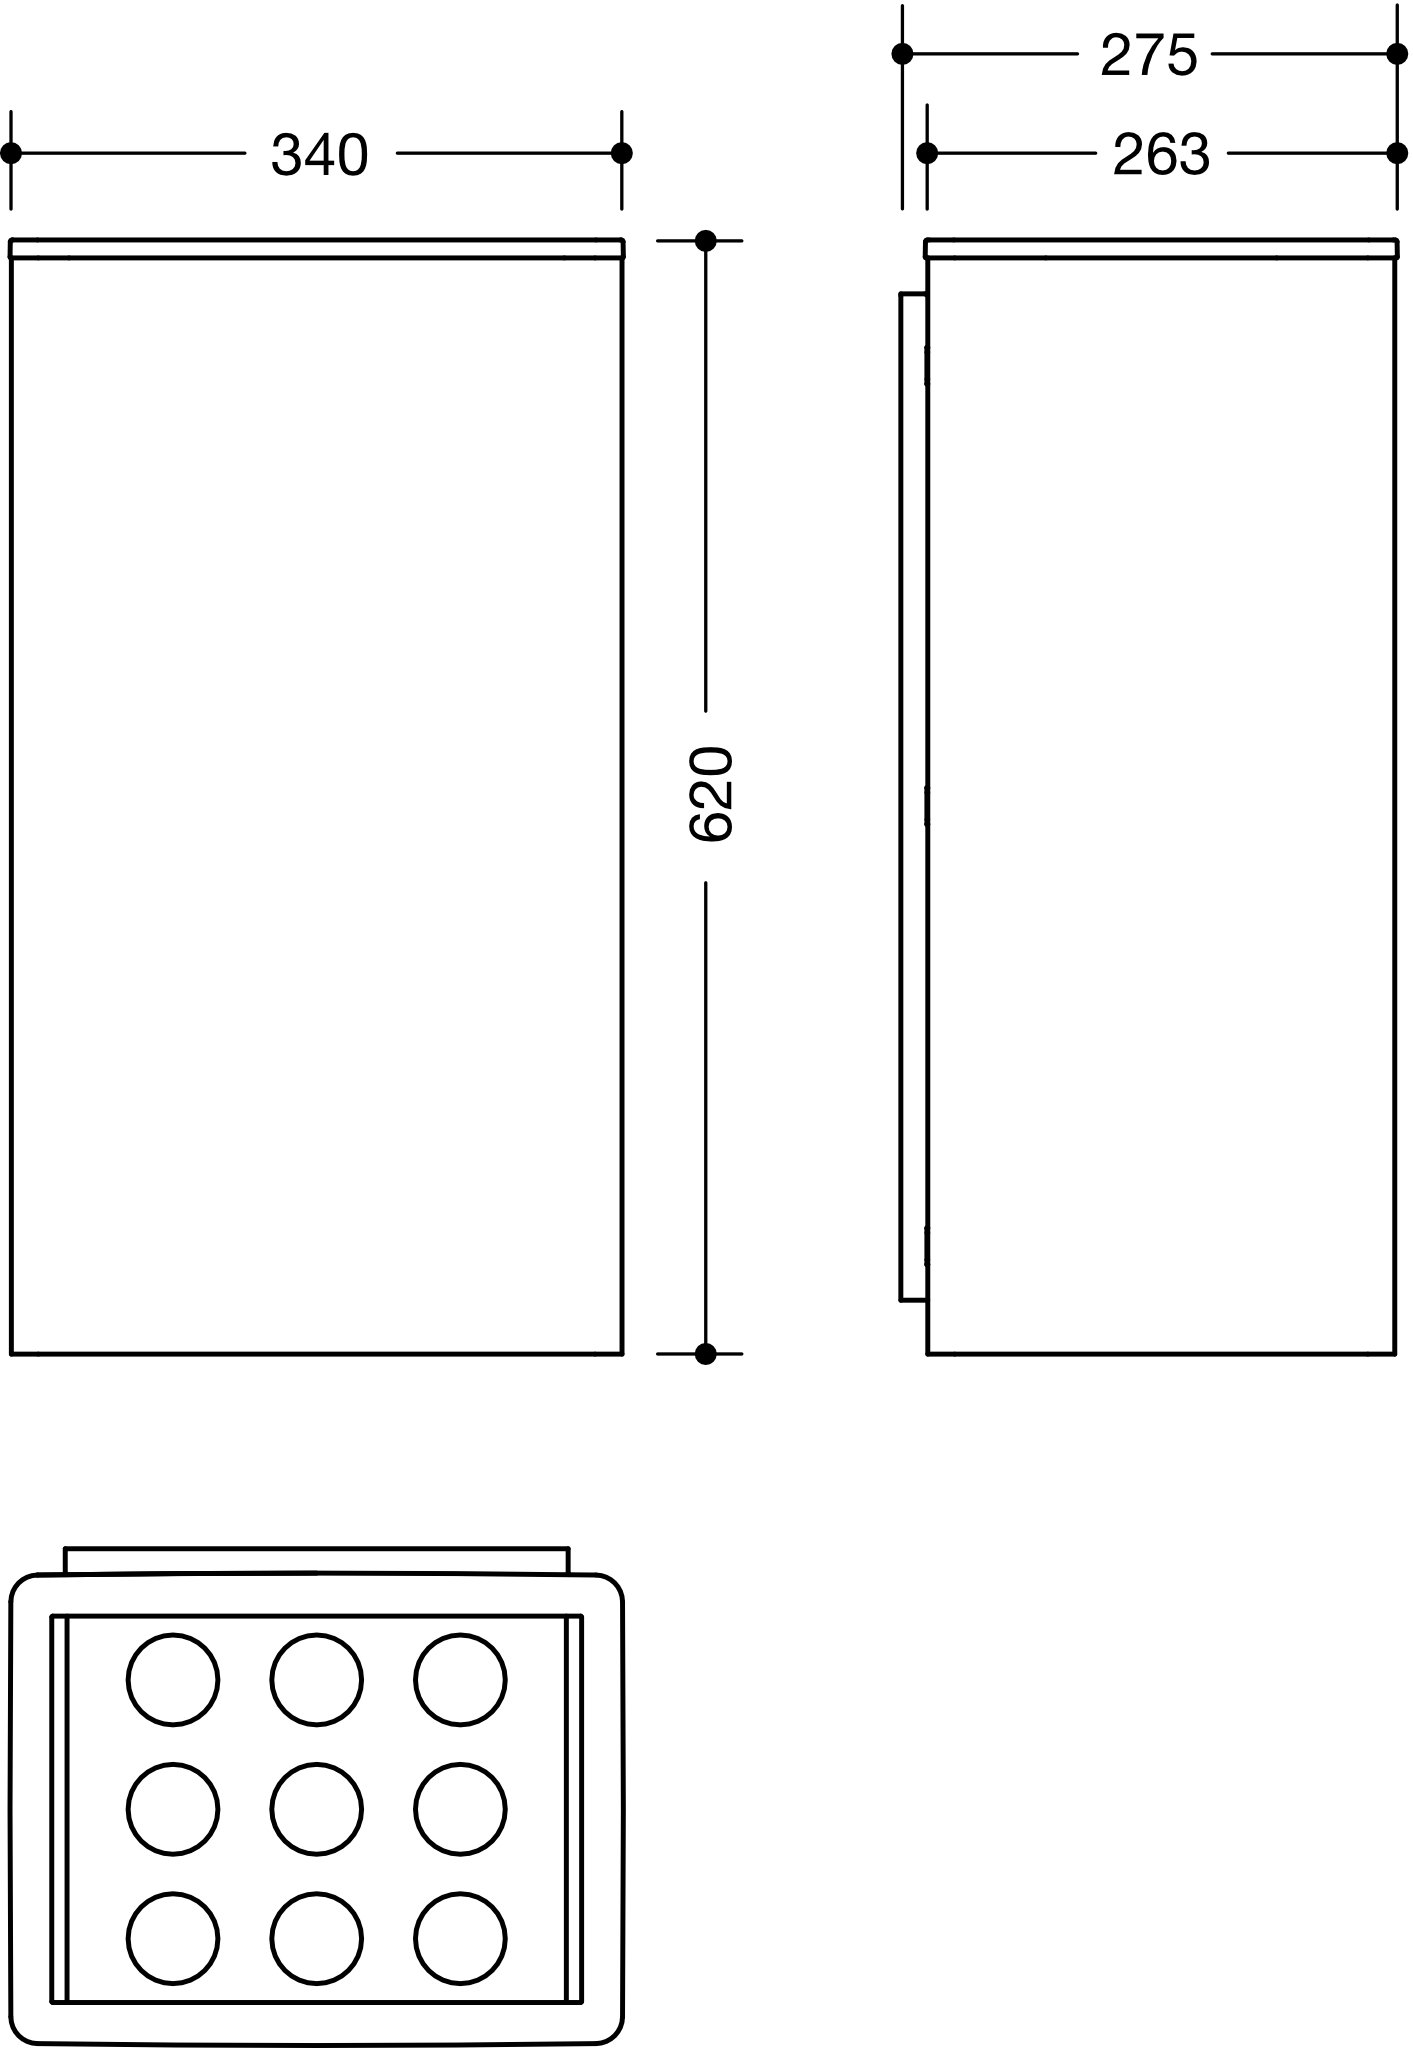 HEWI Papierabfallbehälter „Serie 805“ 27,5 cm